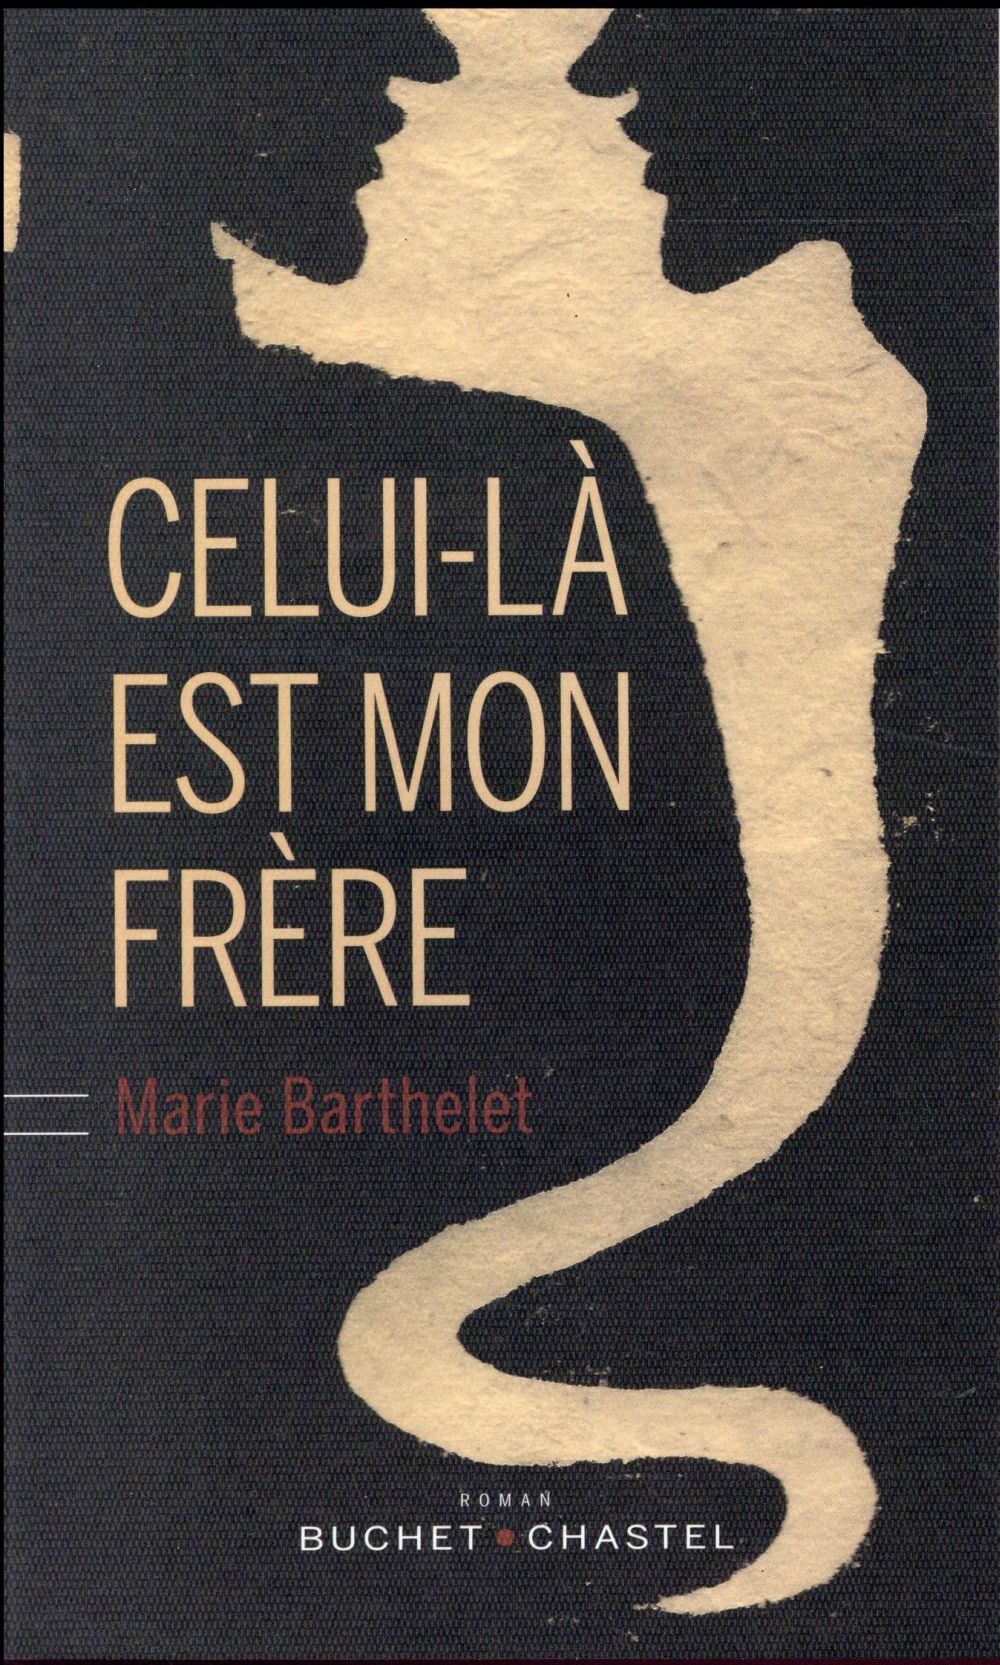 La critique des lecteurs pour "Celui-là est mon frère" de Marie Barthelet